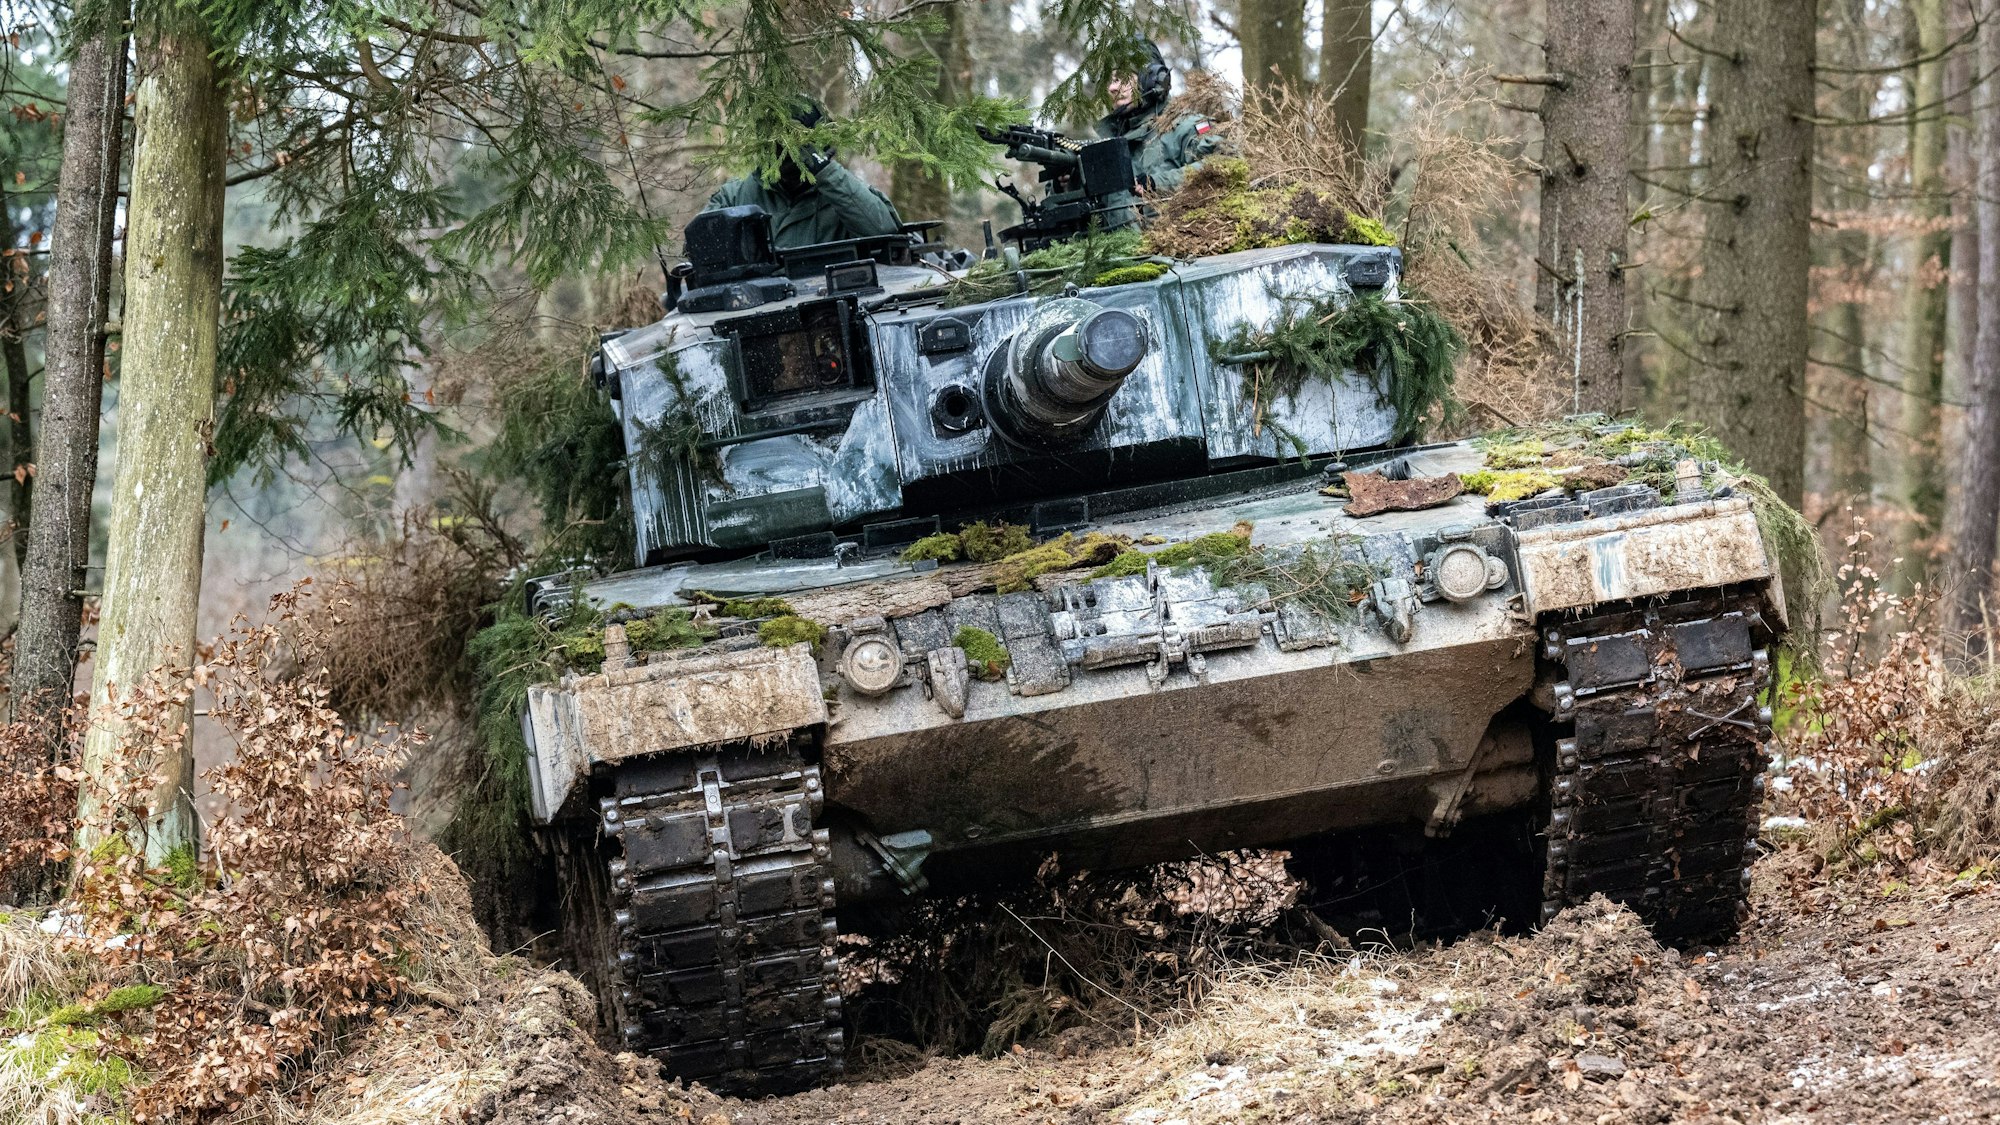 In einem Nadelwald bewegt sich ein zum Teil mit Moosen getarnter Panzer des Typs Leopard 2 zwischen Baumstämmen hindurch. Zwei bewaffnete Soldaten ragen aus den Panzereinstiegsöffnungen heraus.